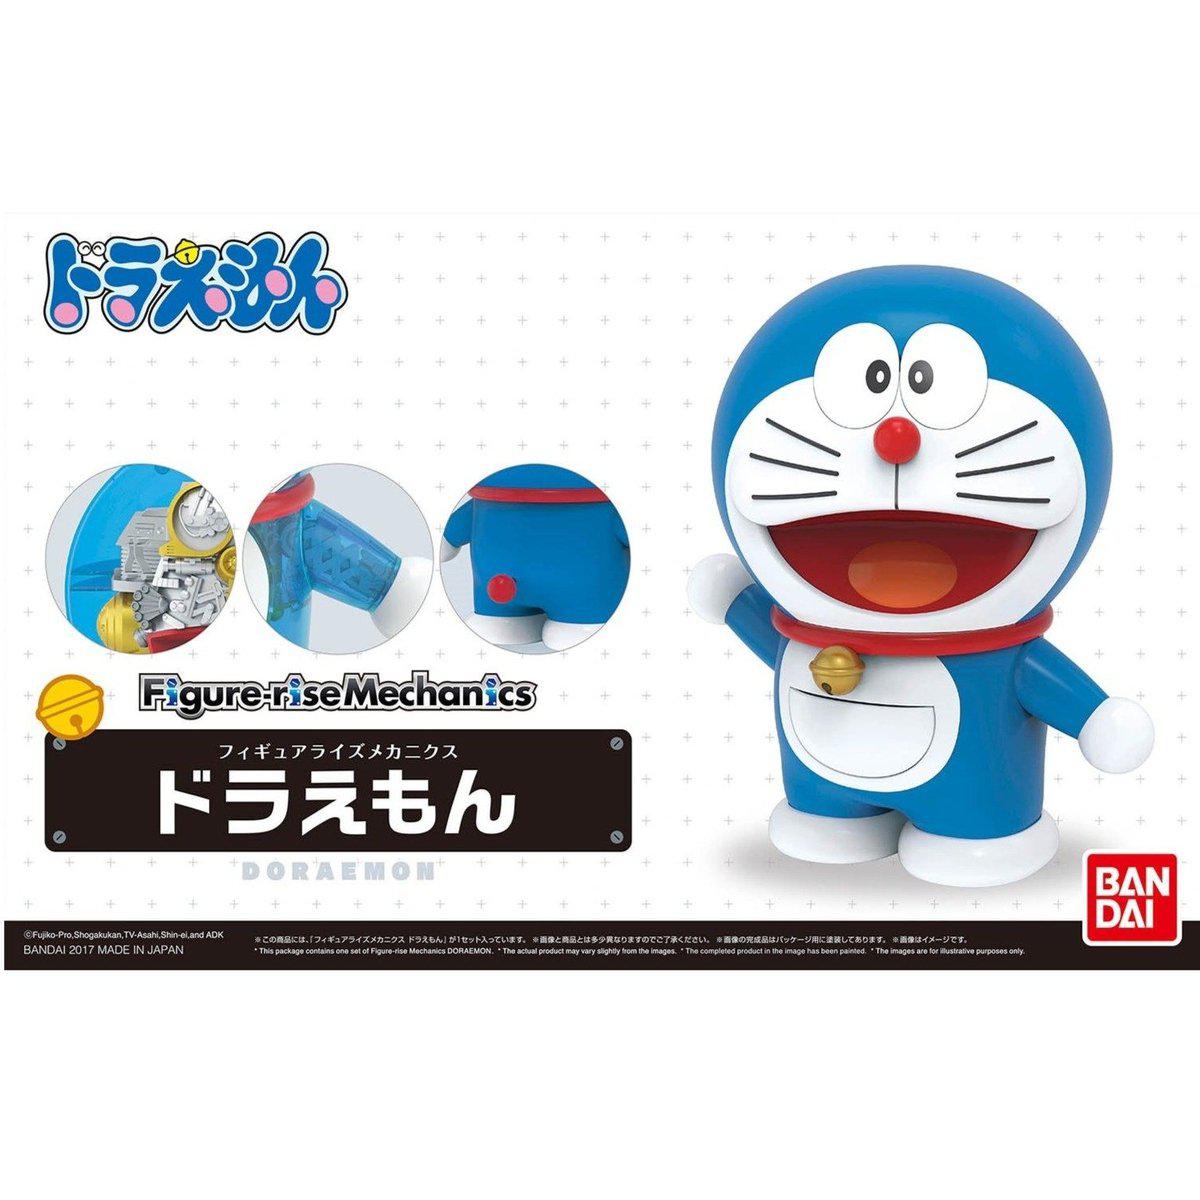 Doraemon Figure-rise Mechanics Doraemon-Bandai-Ace Cards & Collectibles